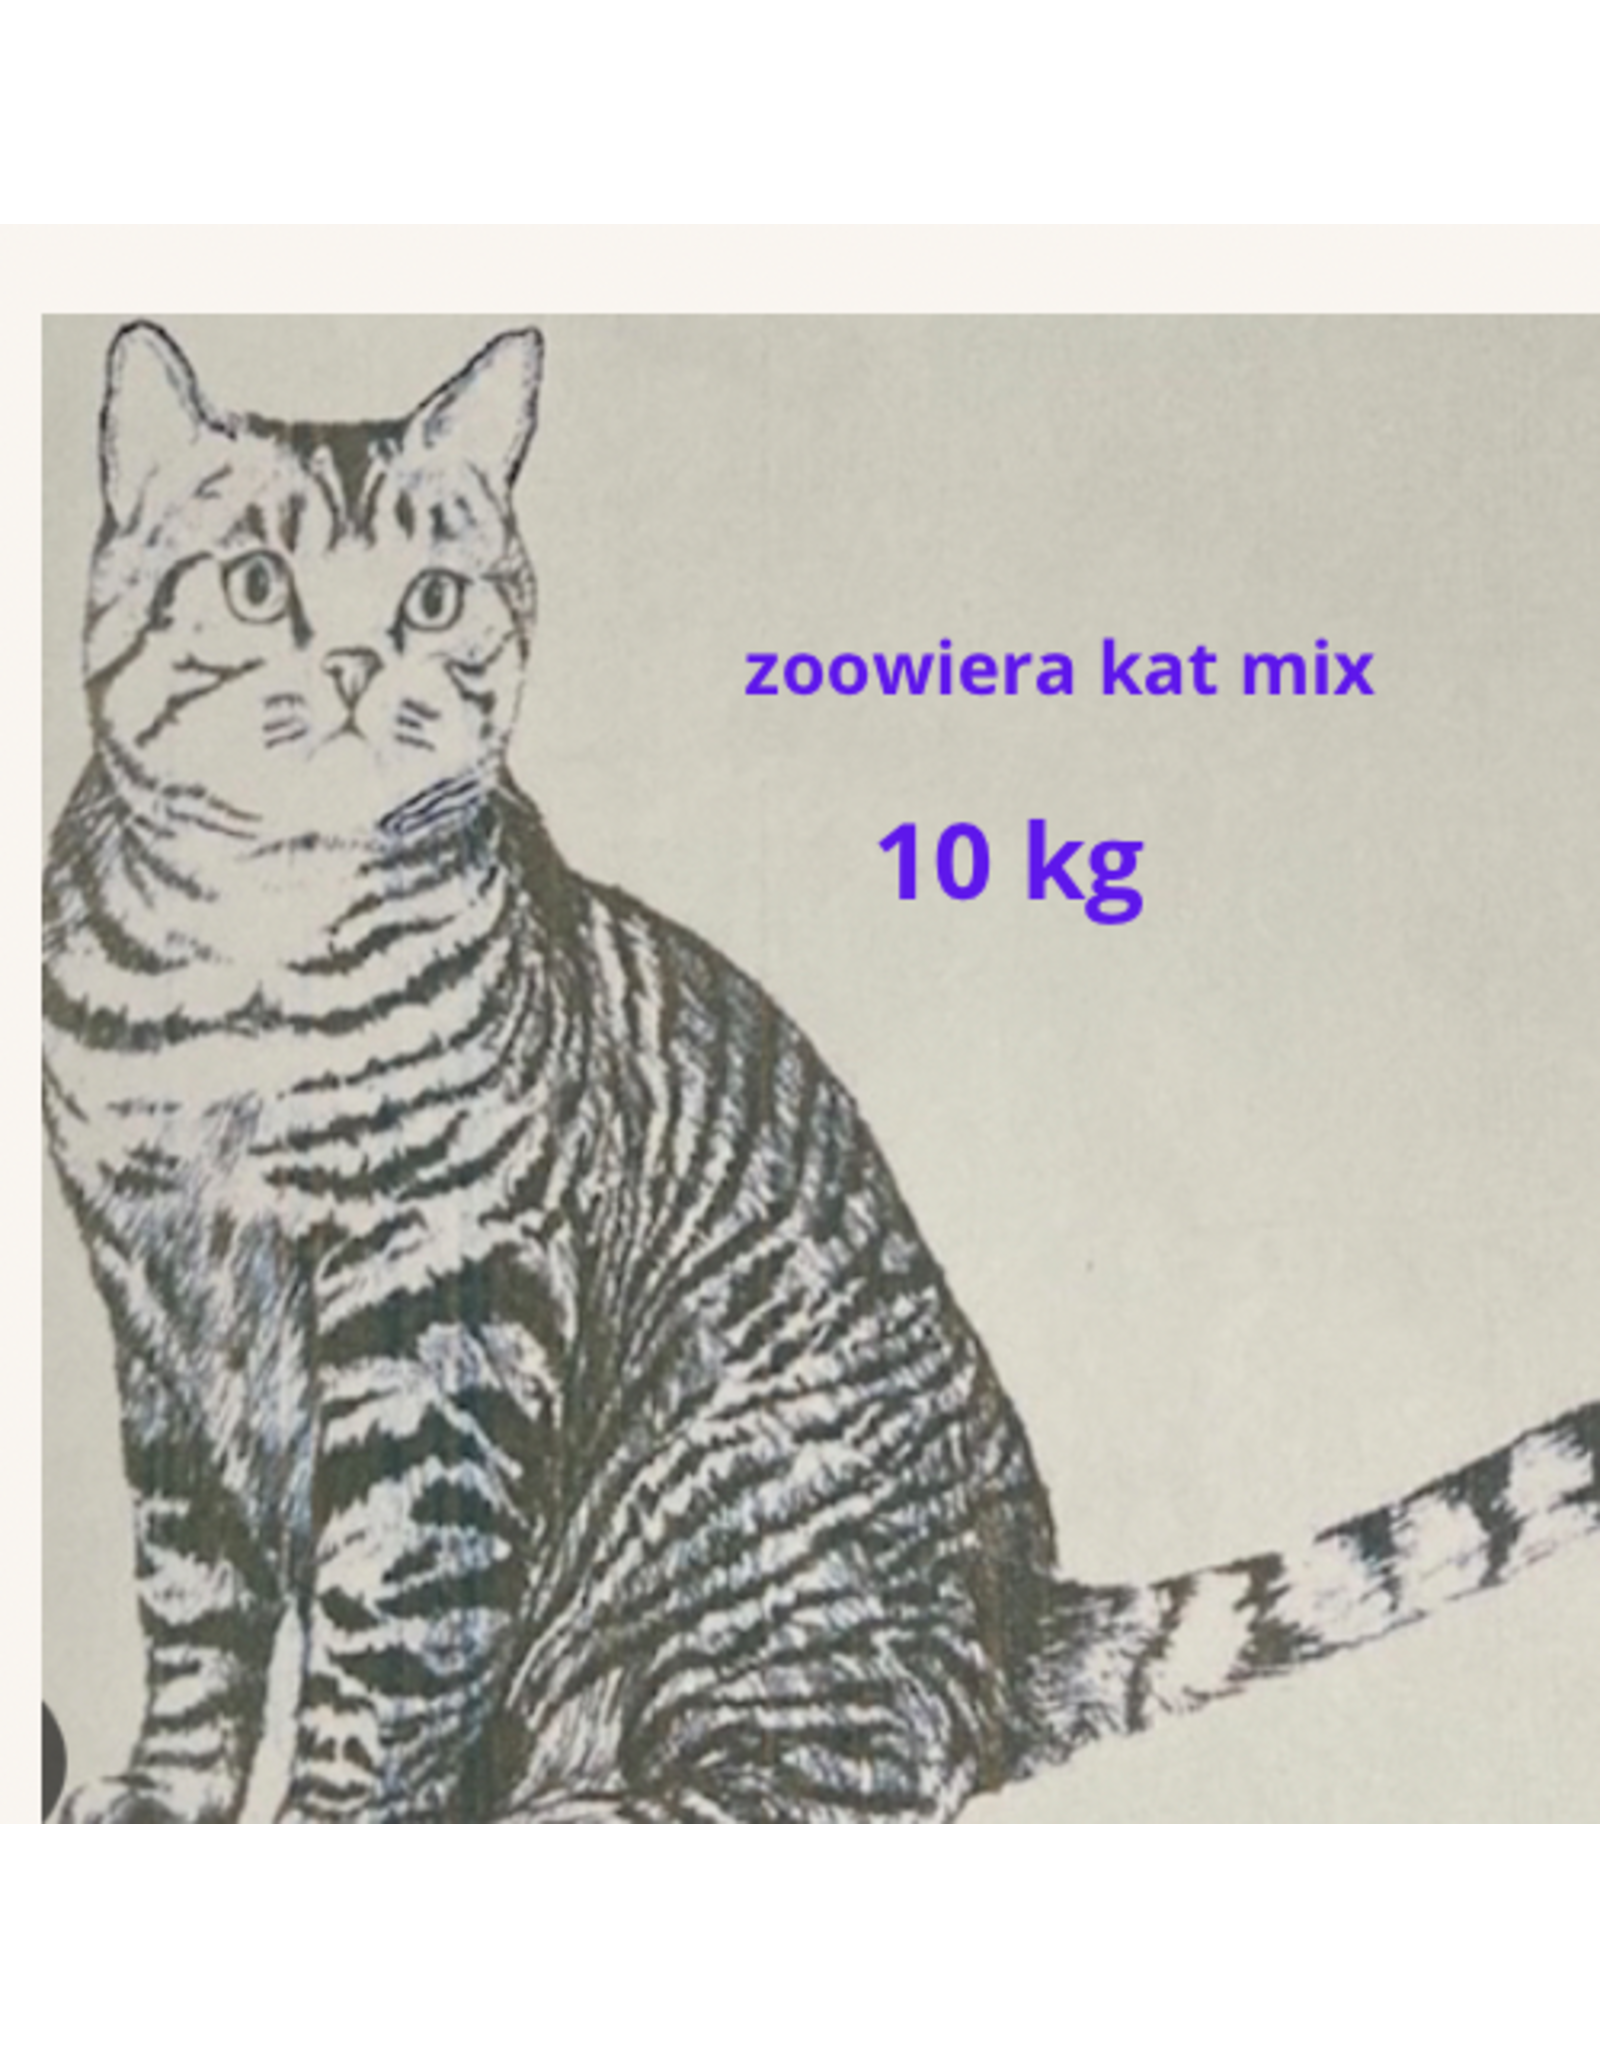 Zoowiera kat mix 10 kg